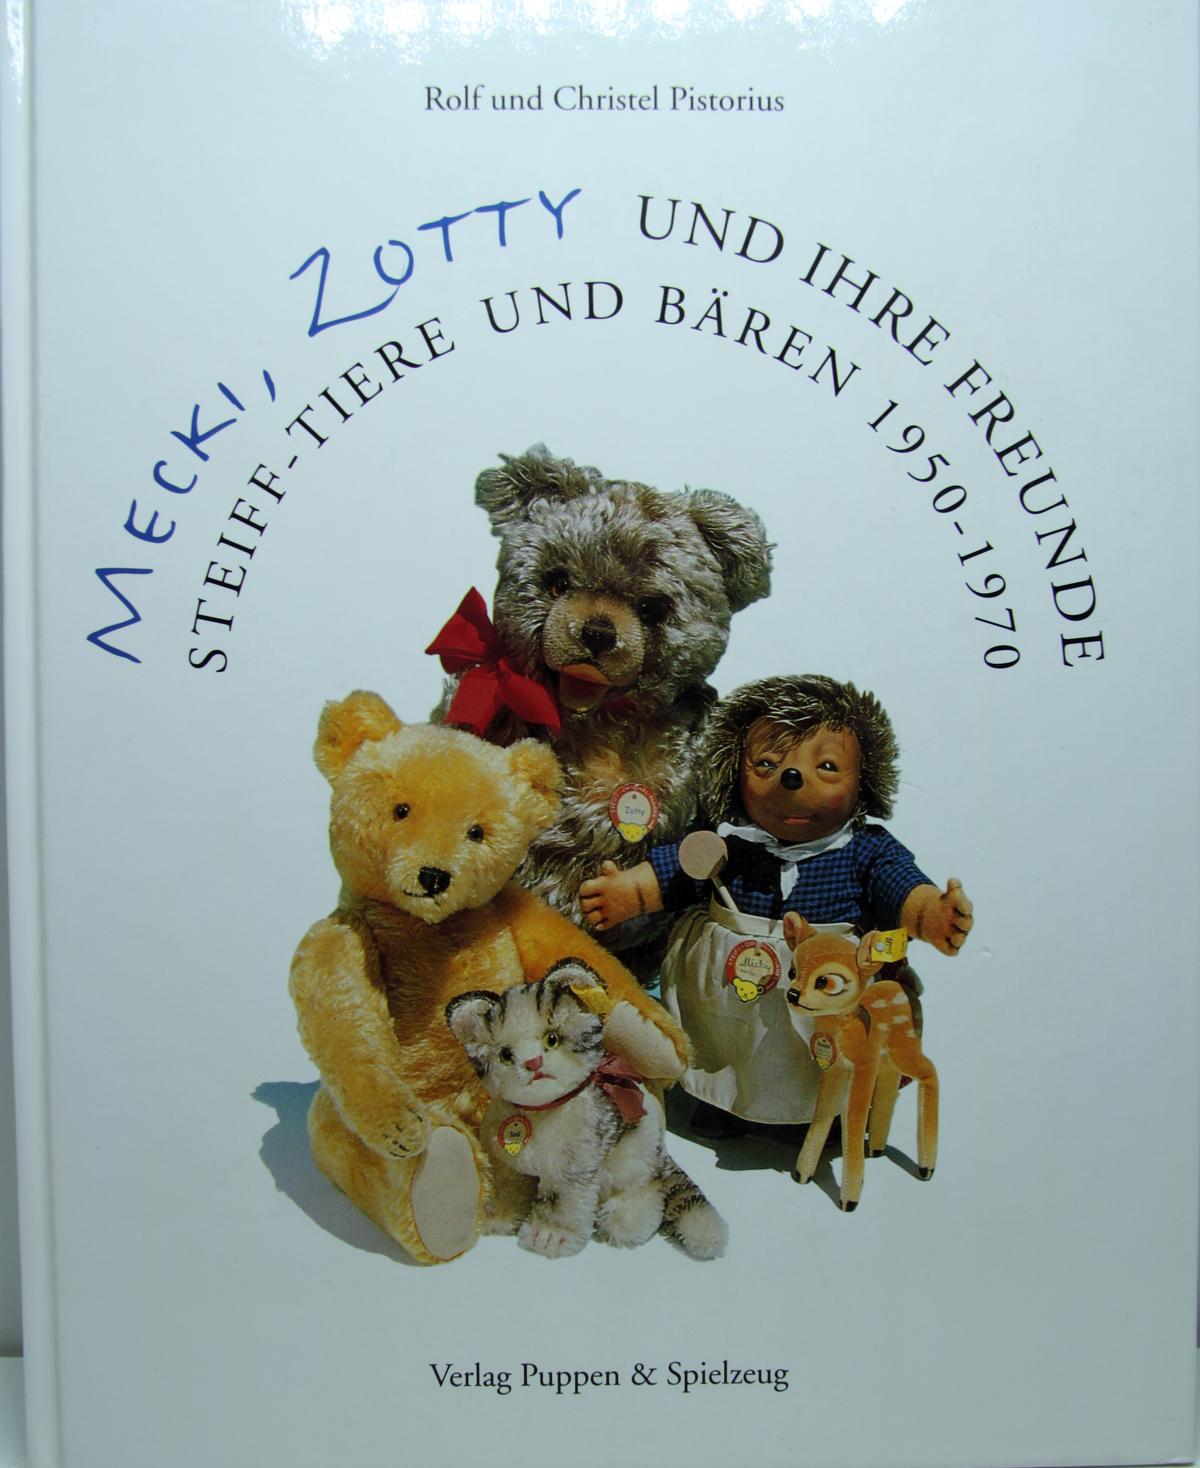 Buch "Mecki, Zotty und ihre Freunde" Steiff-Tiere und Bären 1950 - 1970, von Rolf und Christel Pistorius, Verlag Puppen & Spielzeug. 